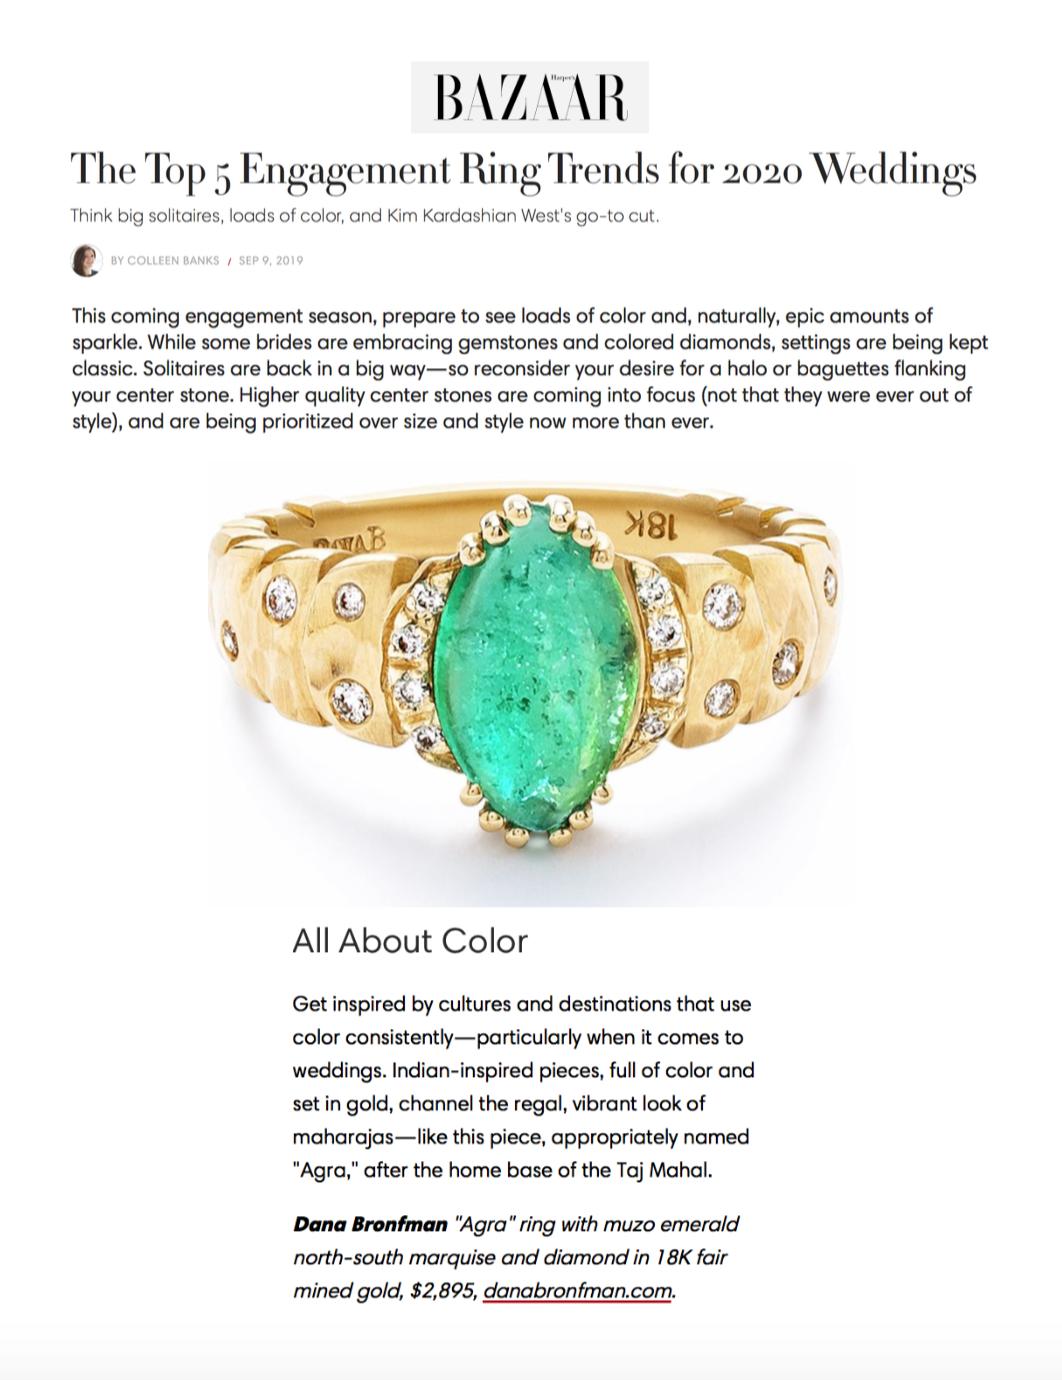 Dana Bronfman x Muzo Emeralds Ring Featured in Harpers Bazaar